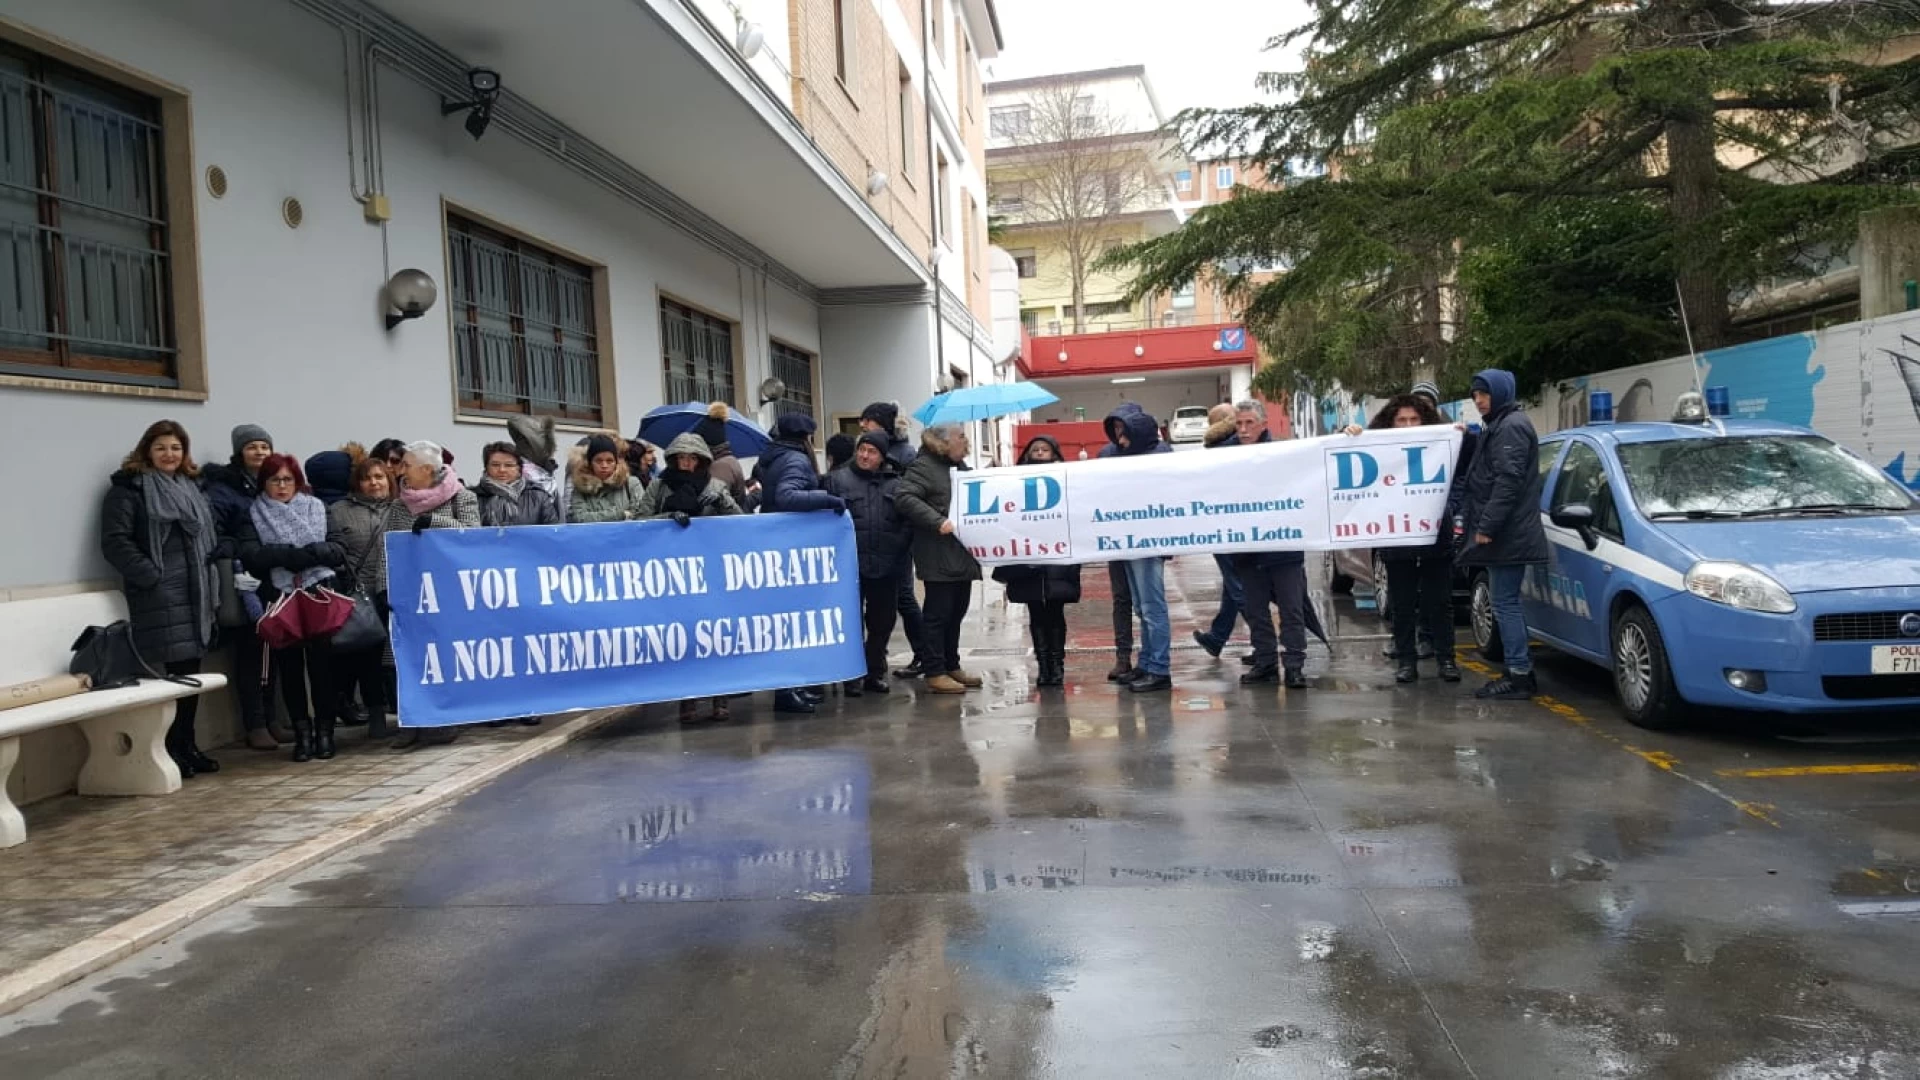 Campobasso: gli ex Lavoratori in lotta protestano dinanzi la Regione Molise. In ballo futuro e promesse non mantenute.